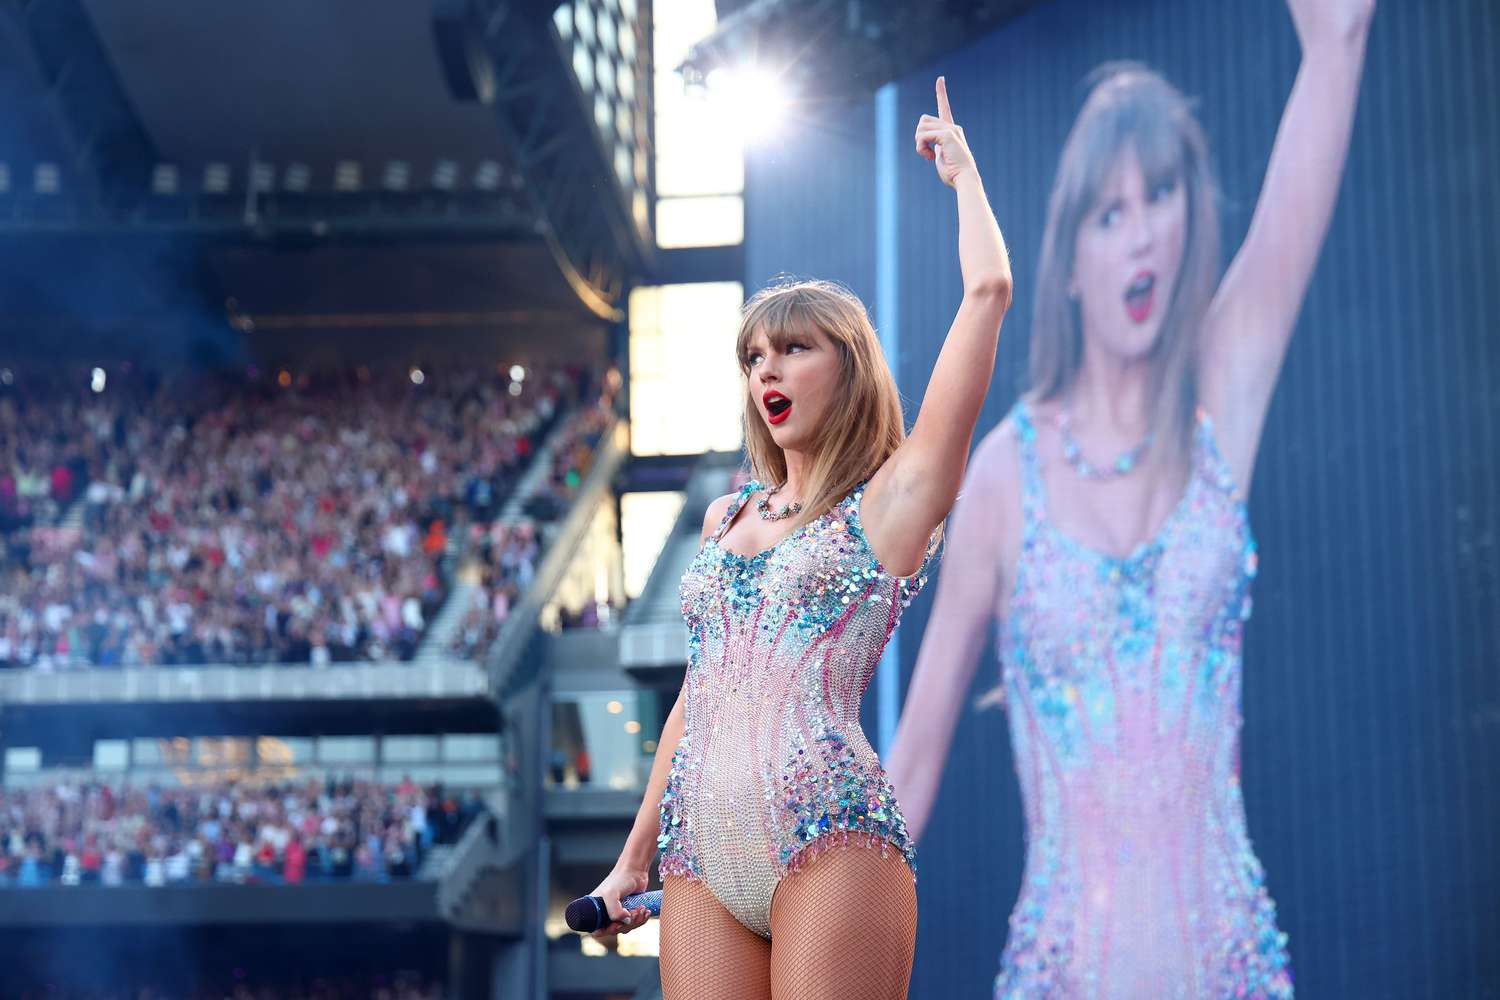 Imagem de conteúdo da notícia "Taylor Swift conquista o maior público da sua carreira" #1